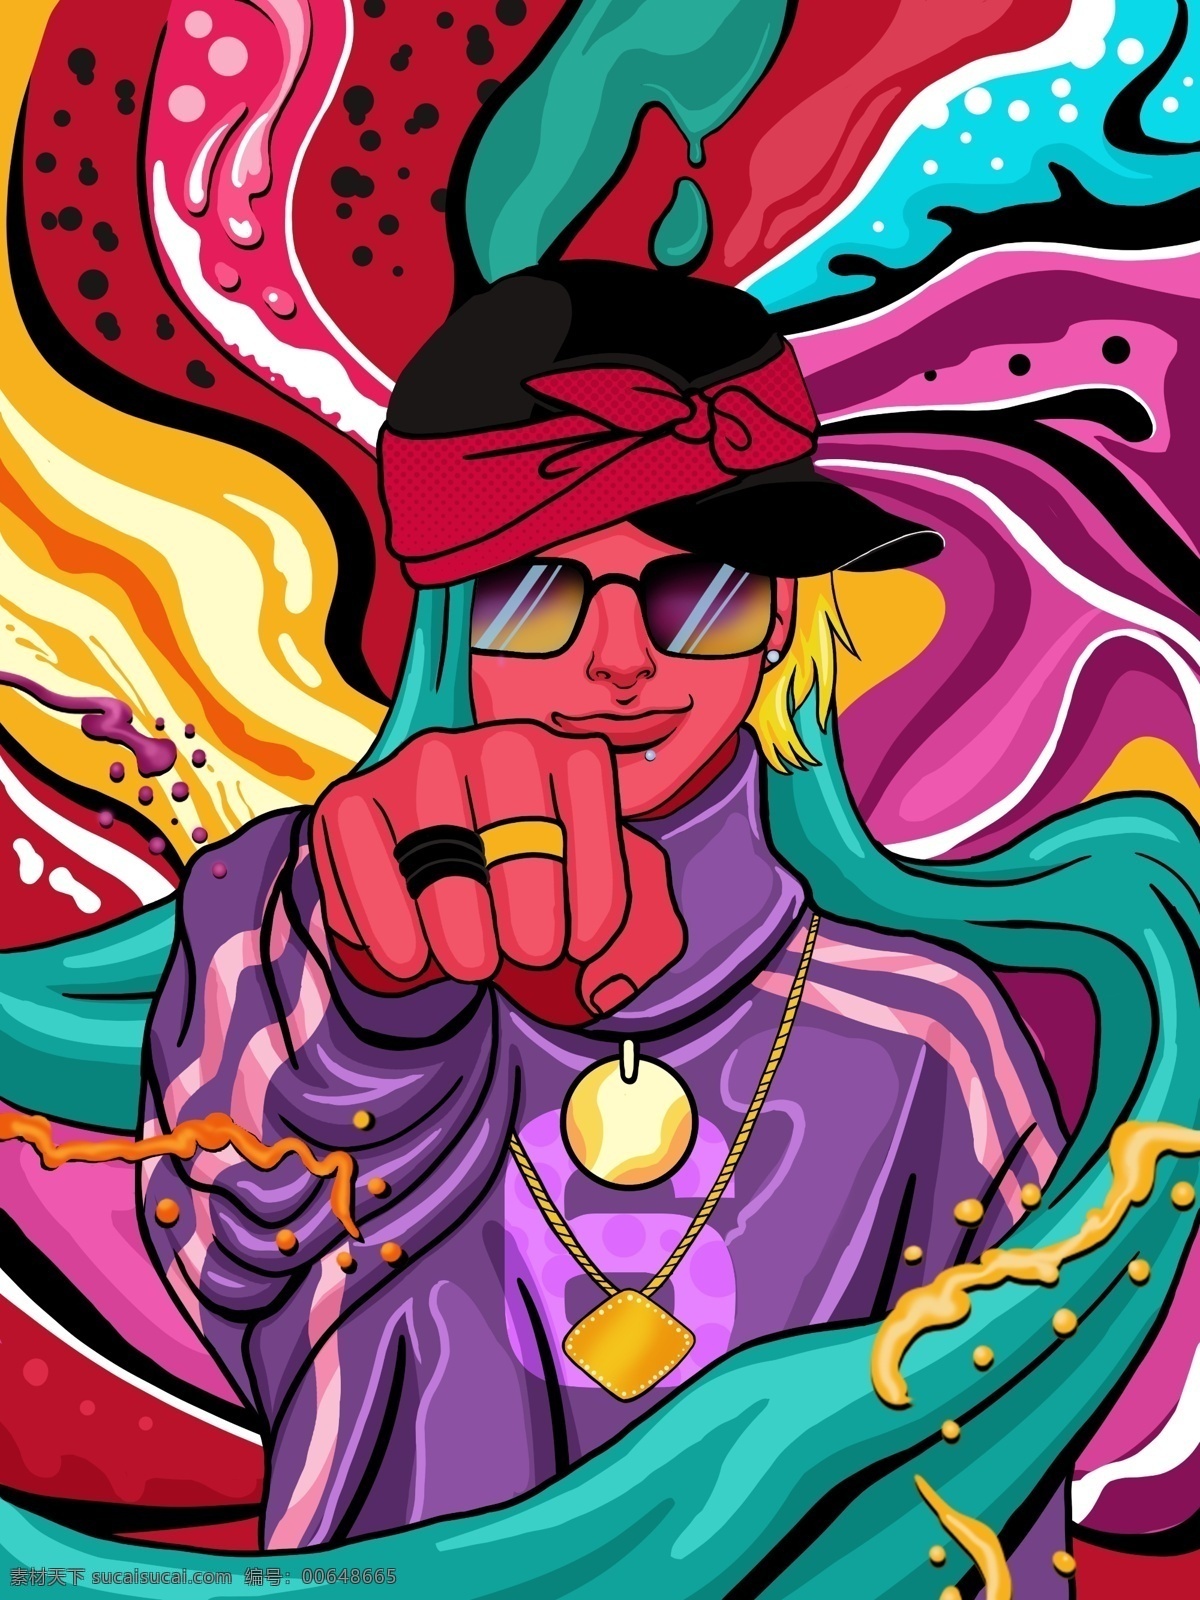 流动 糖果 色 嘻哈 男孩 系列 插画 糖果色 流动的色彩 绚丽多彩 嘻哈风格 嘻哈男孩 嘻哈风格插画